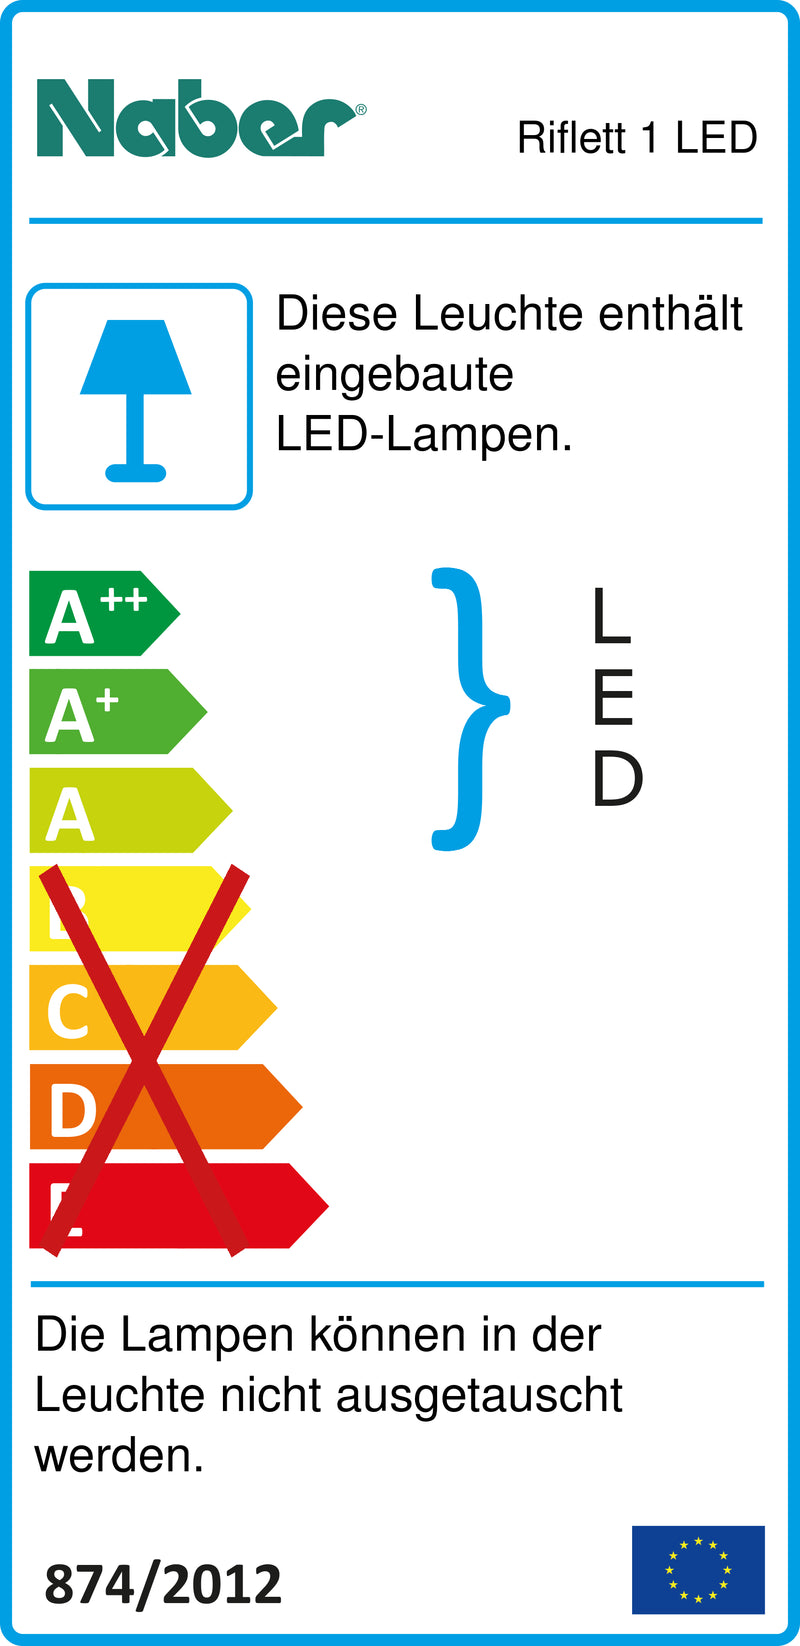 E-Label zu Zeichnung zu Riflett 1 LED als Variante Einzelleuchte o. S., 4000 K neutralweiß von Naber GmbH in der Kategorie Lichttechnik in Österreich auf conceptshop.at